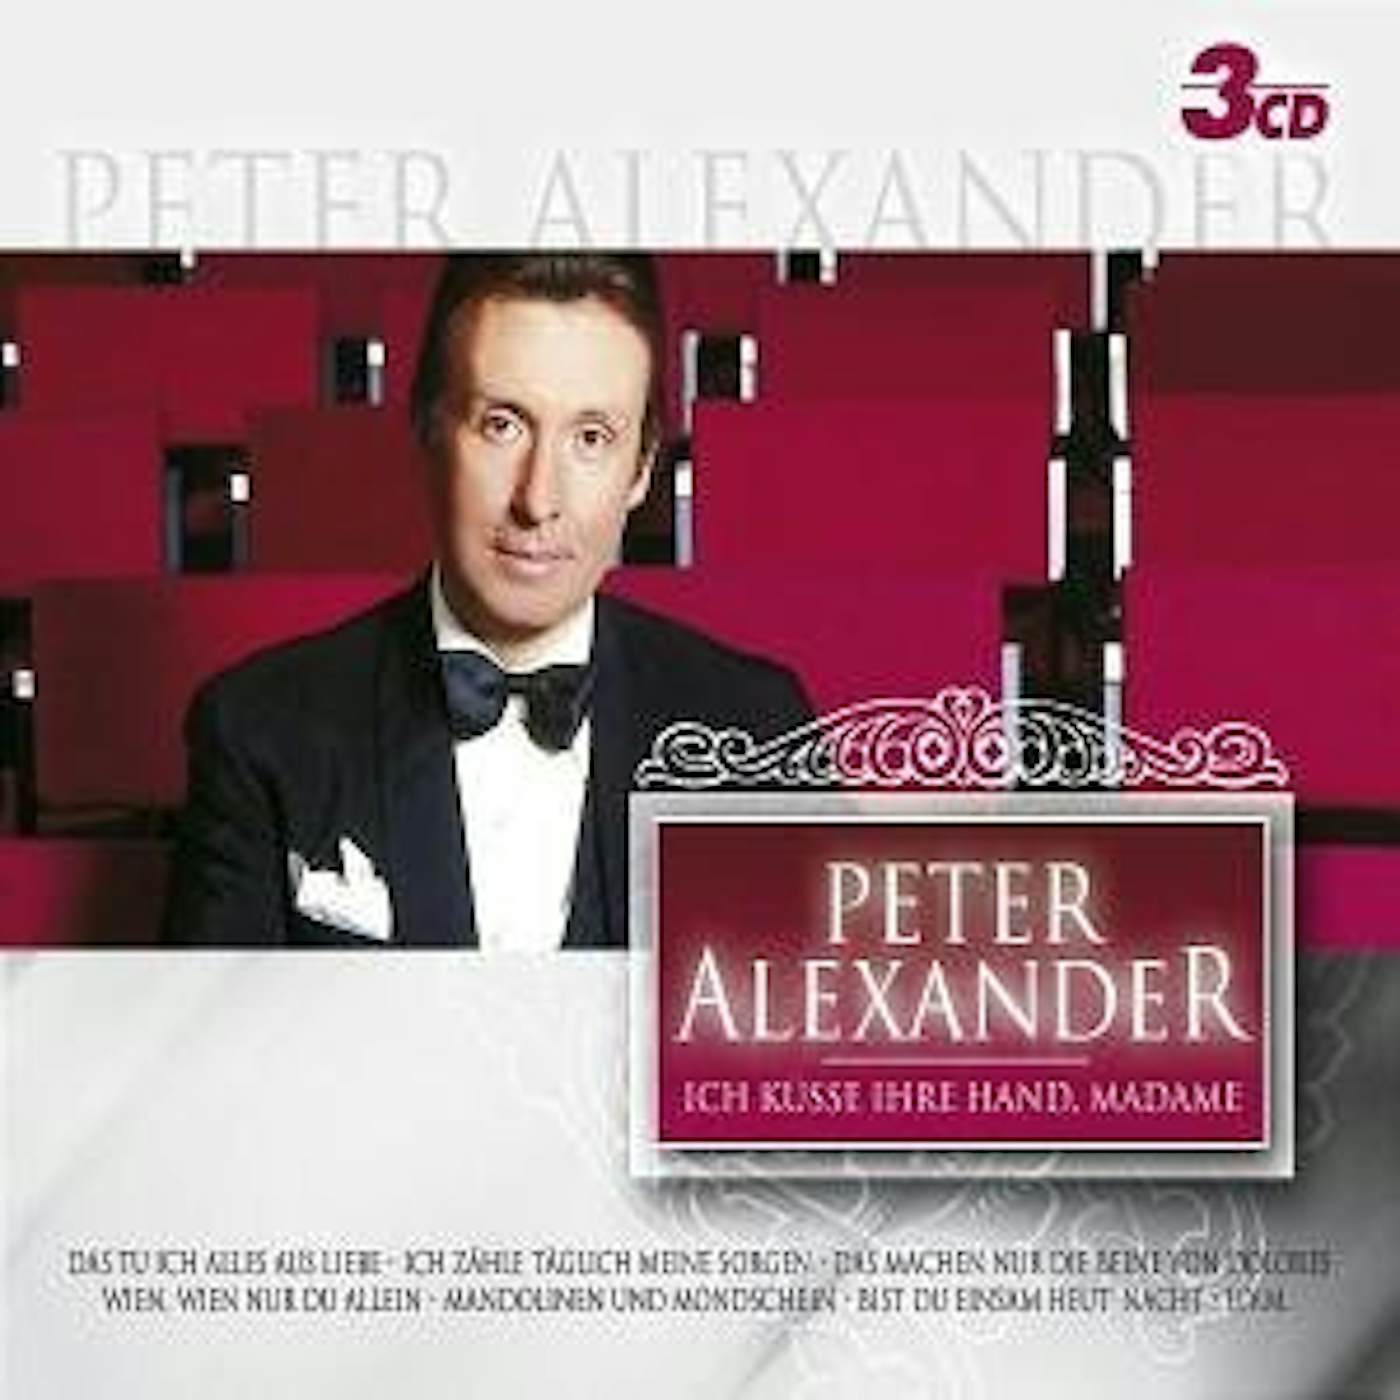 Peter Alexander ICH KUSSE IHRE HAND MADAME CD